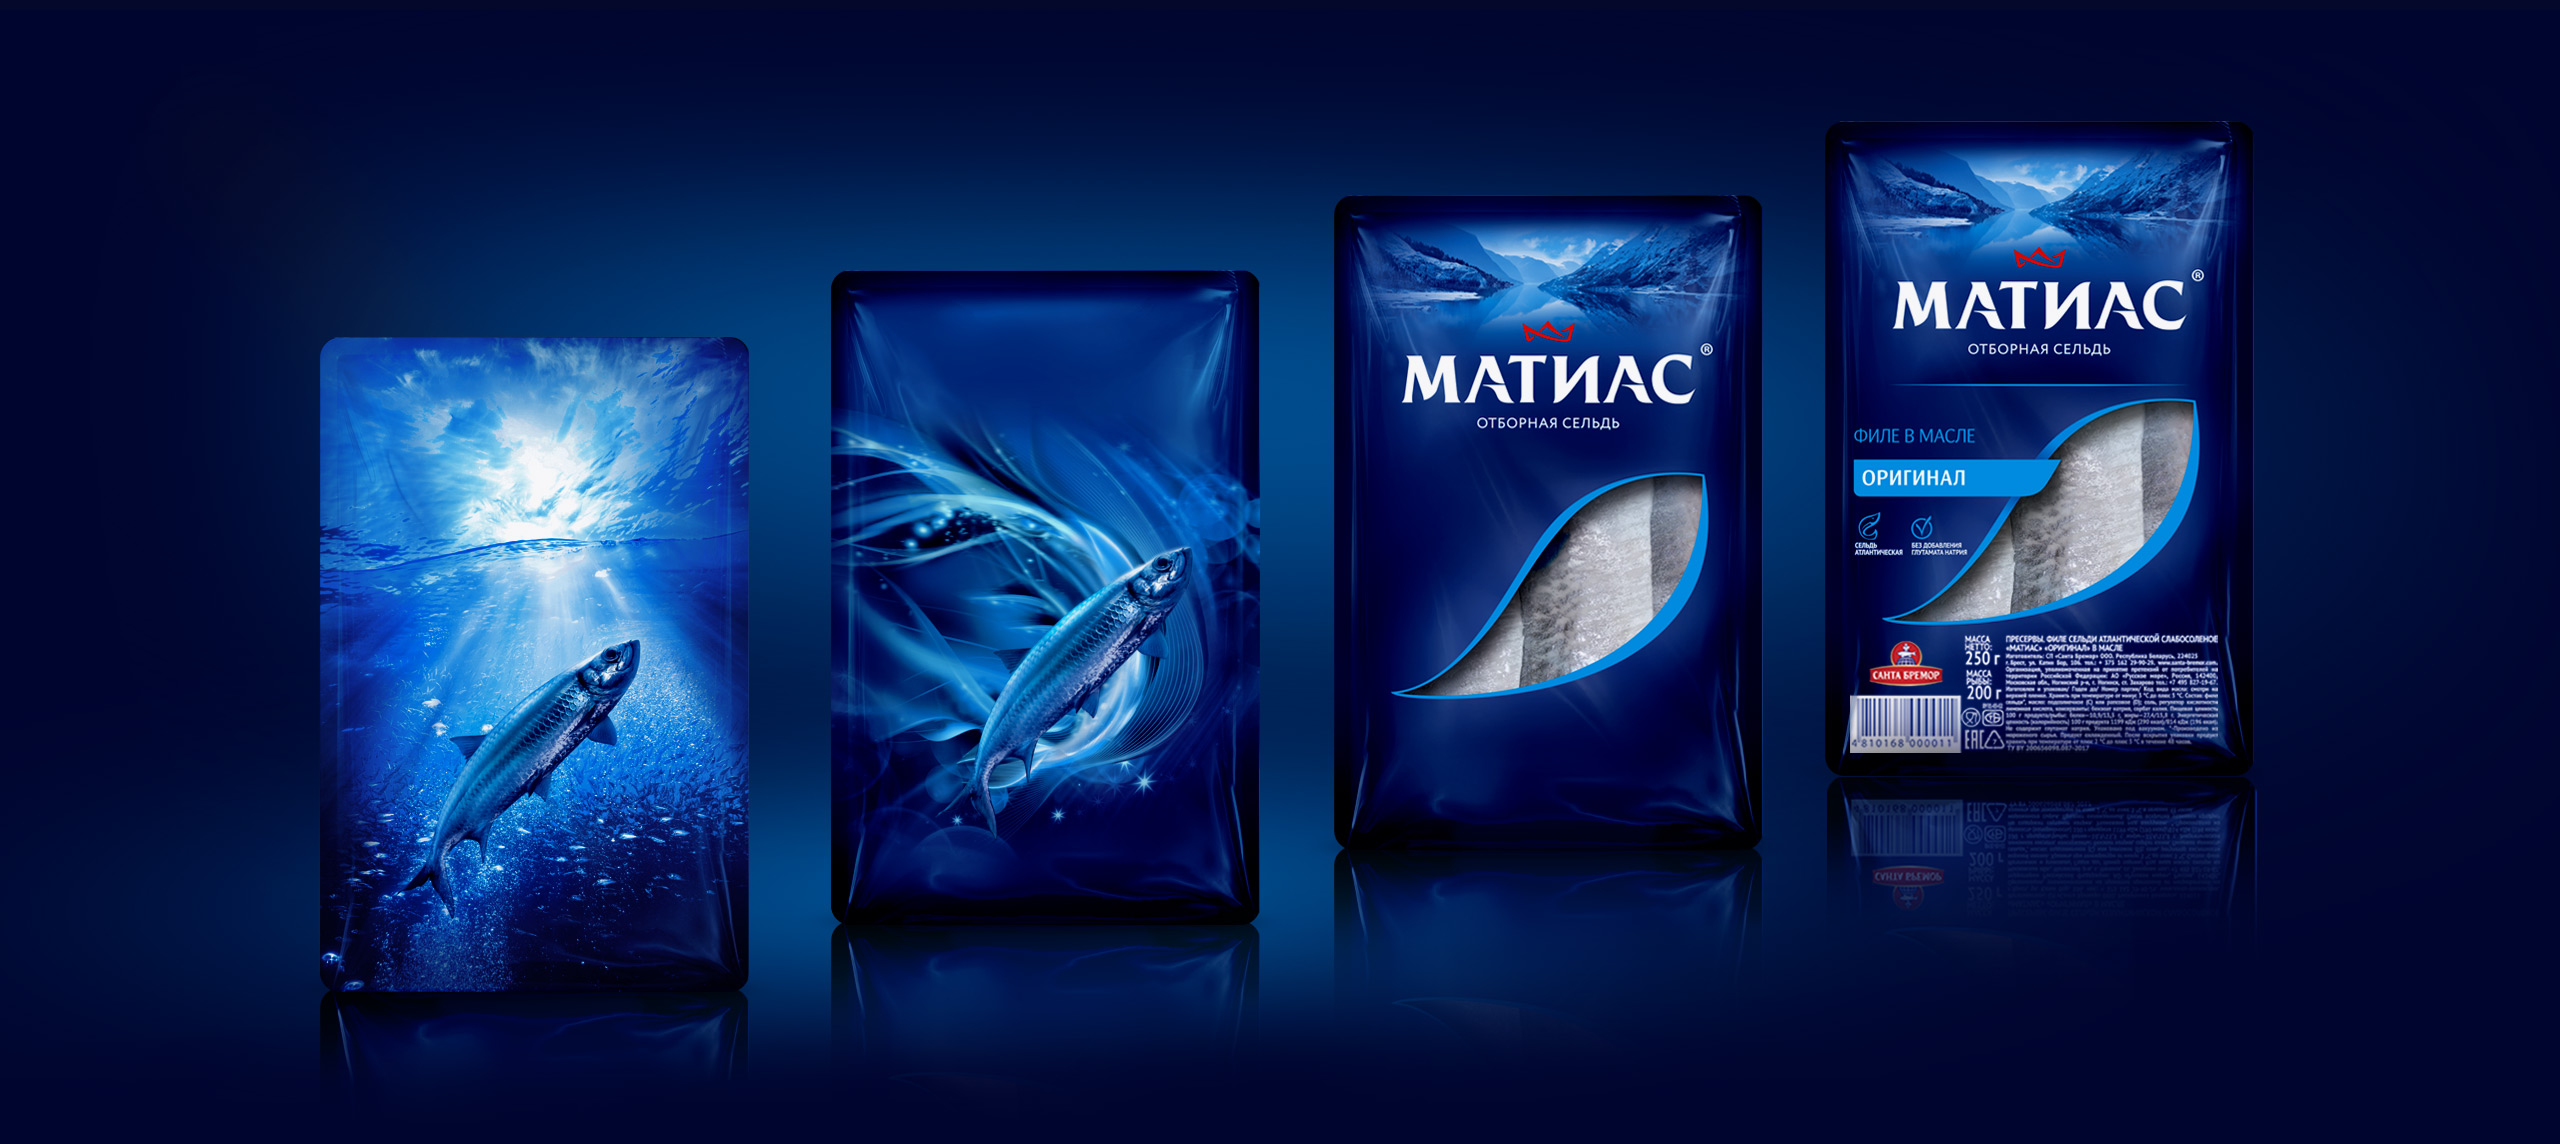 mattias-packaging-development.jpg